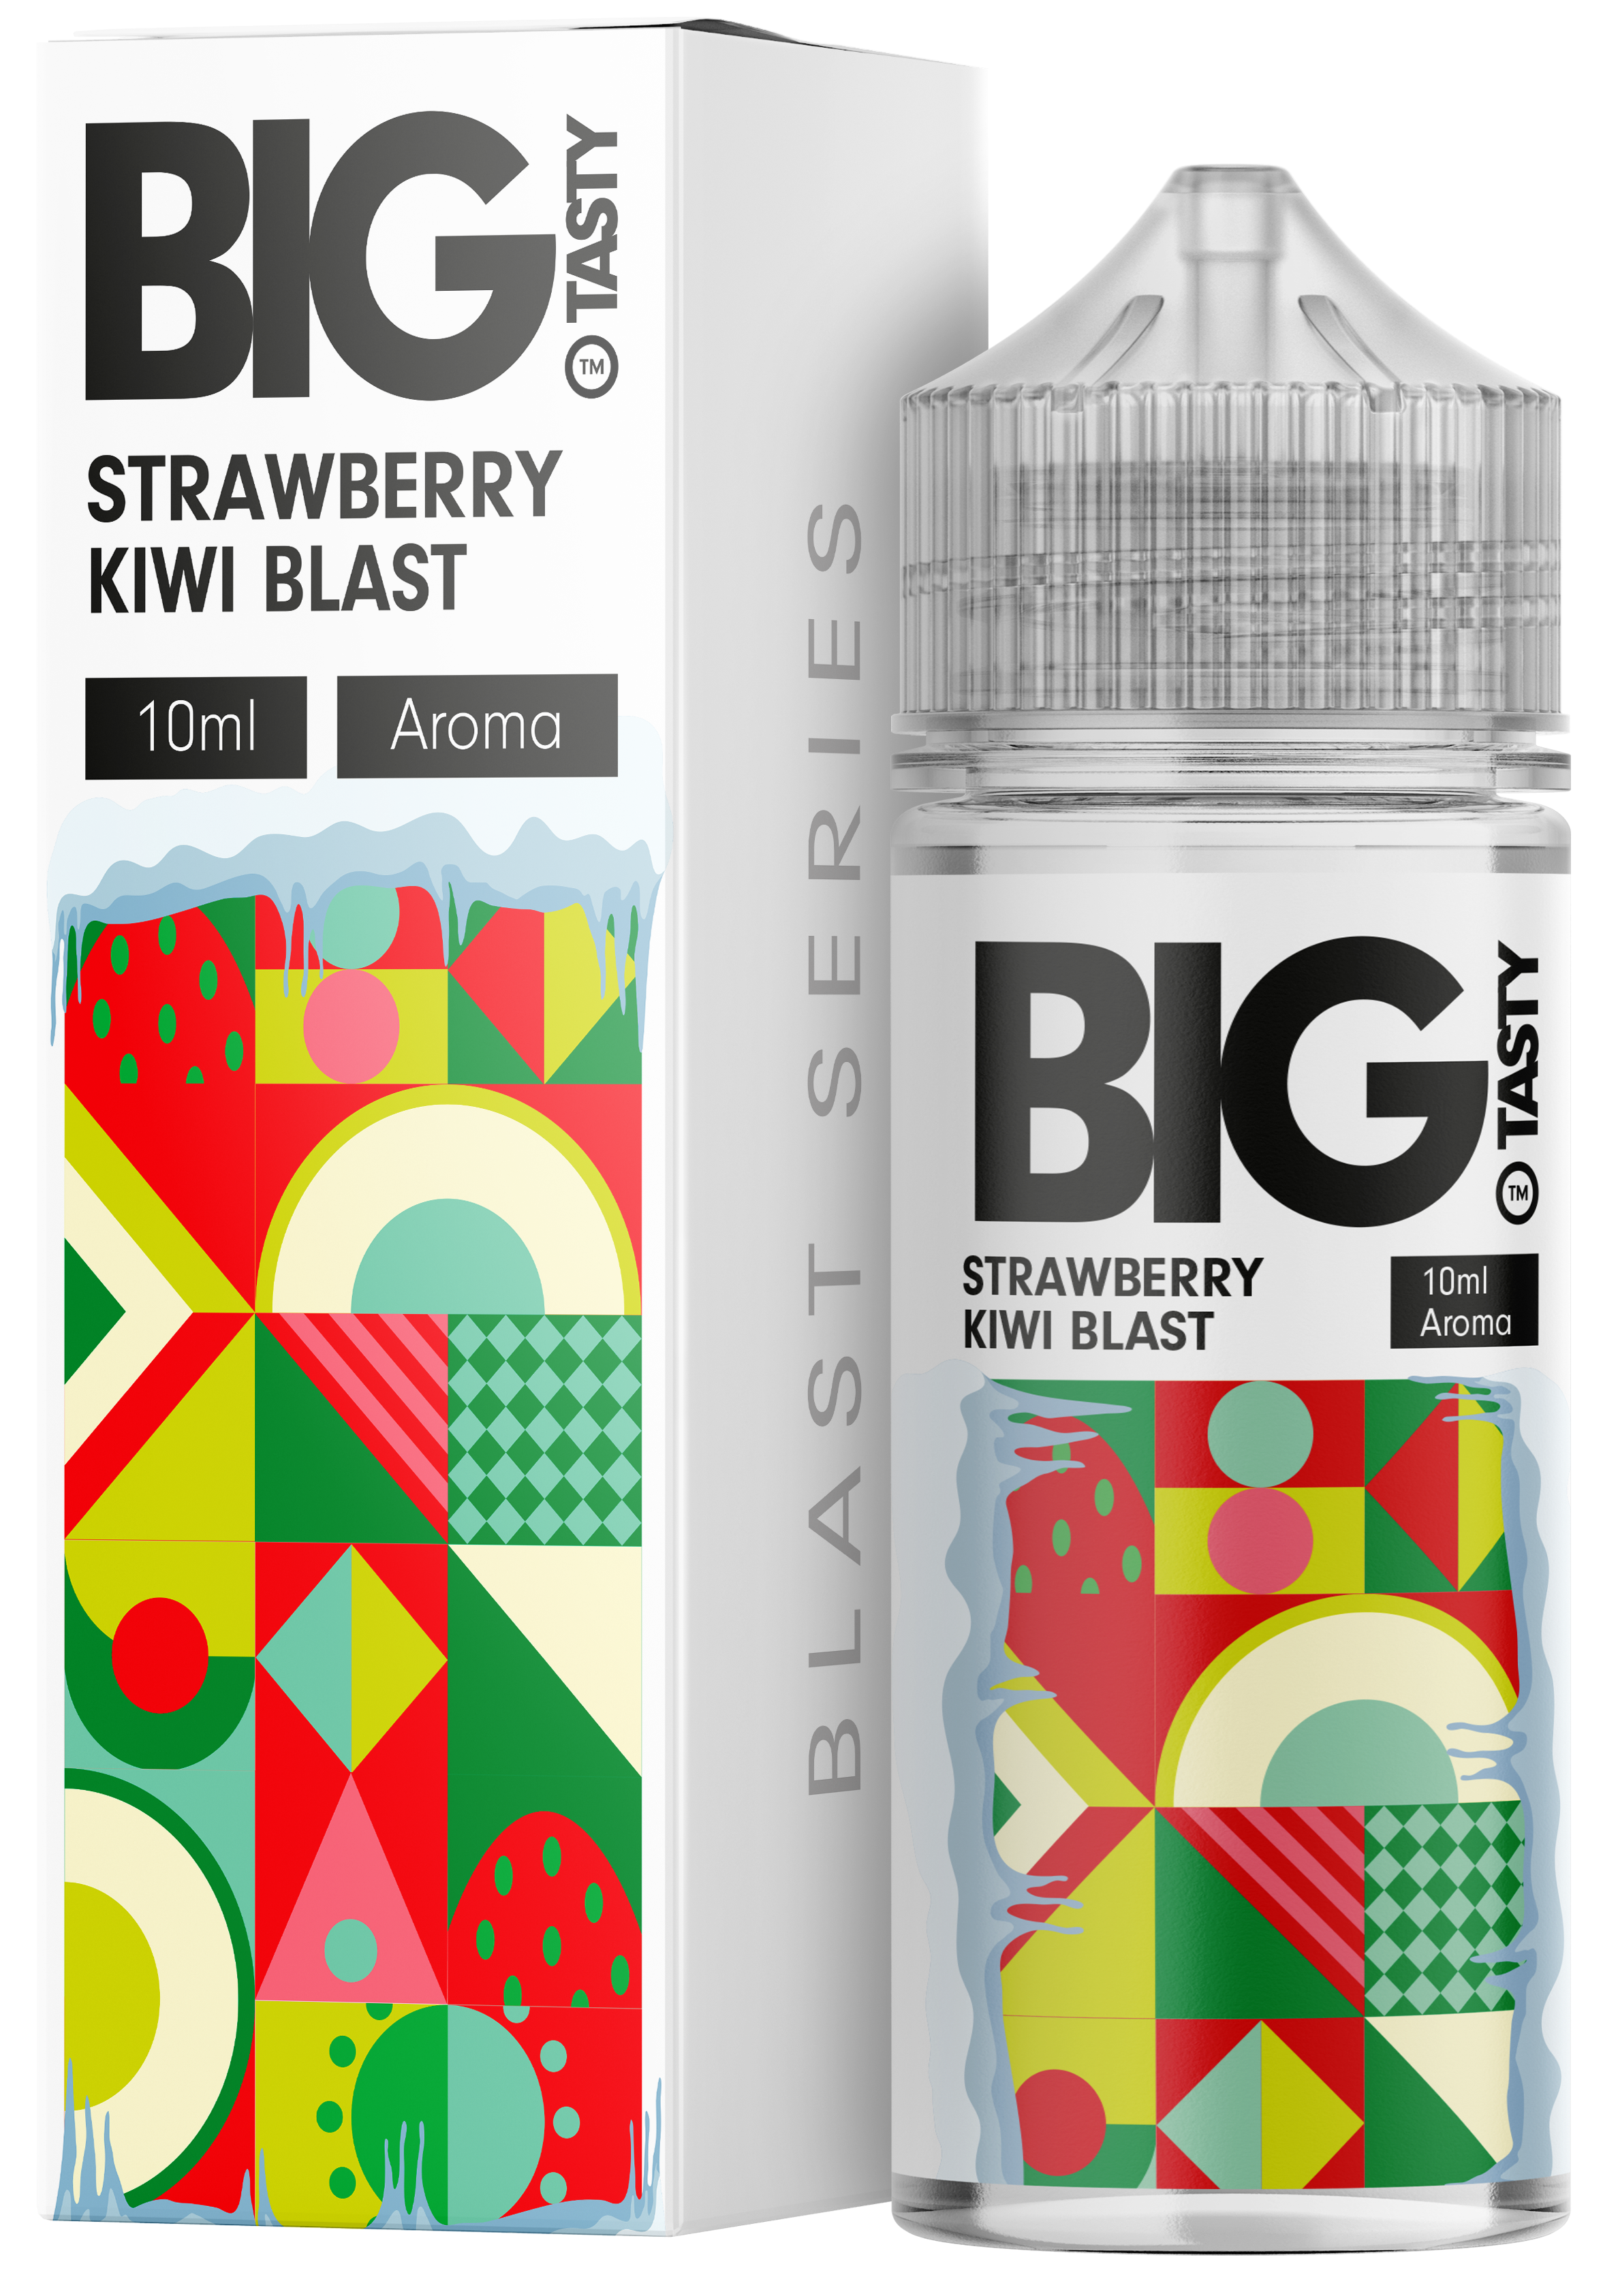 Big Tasty - Strawberry Kiwi Blast  Aroma 10ml